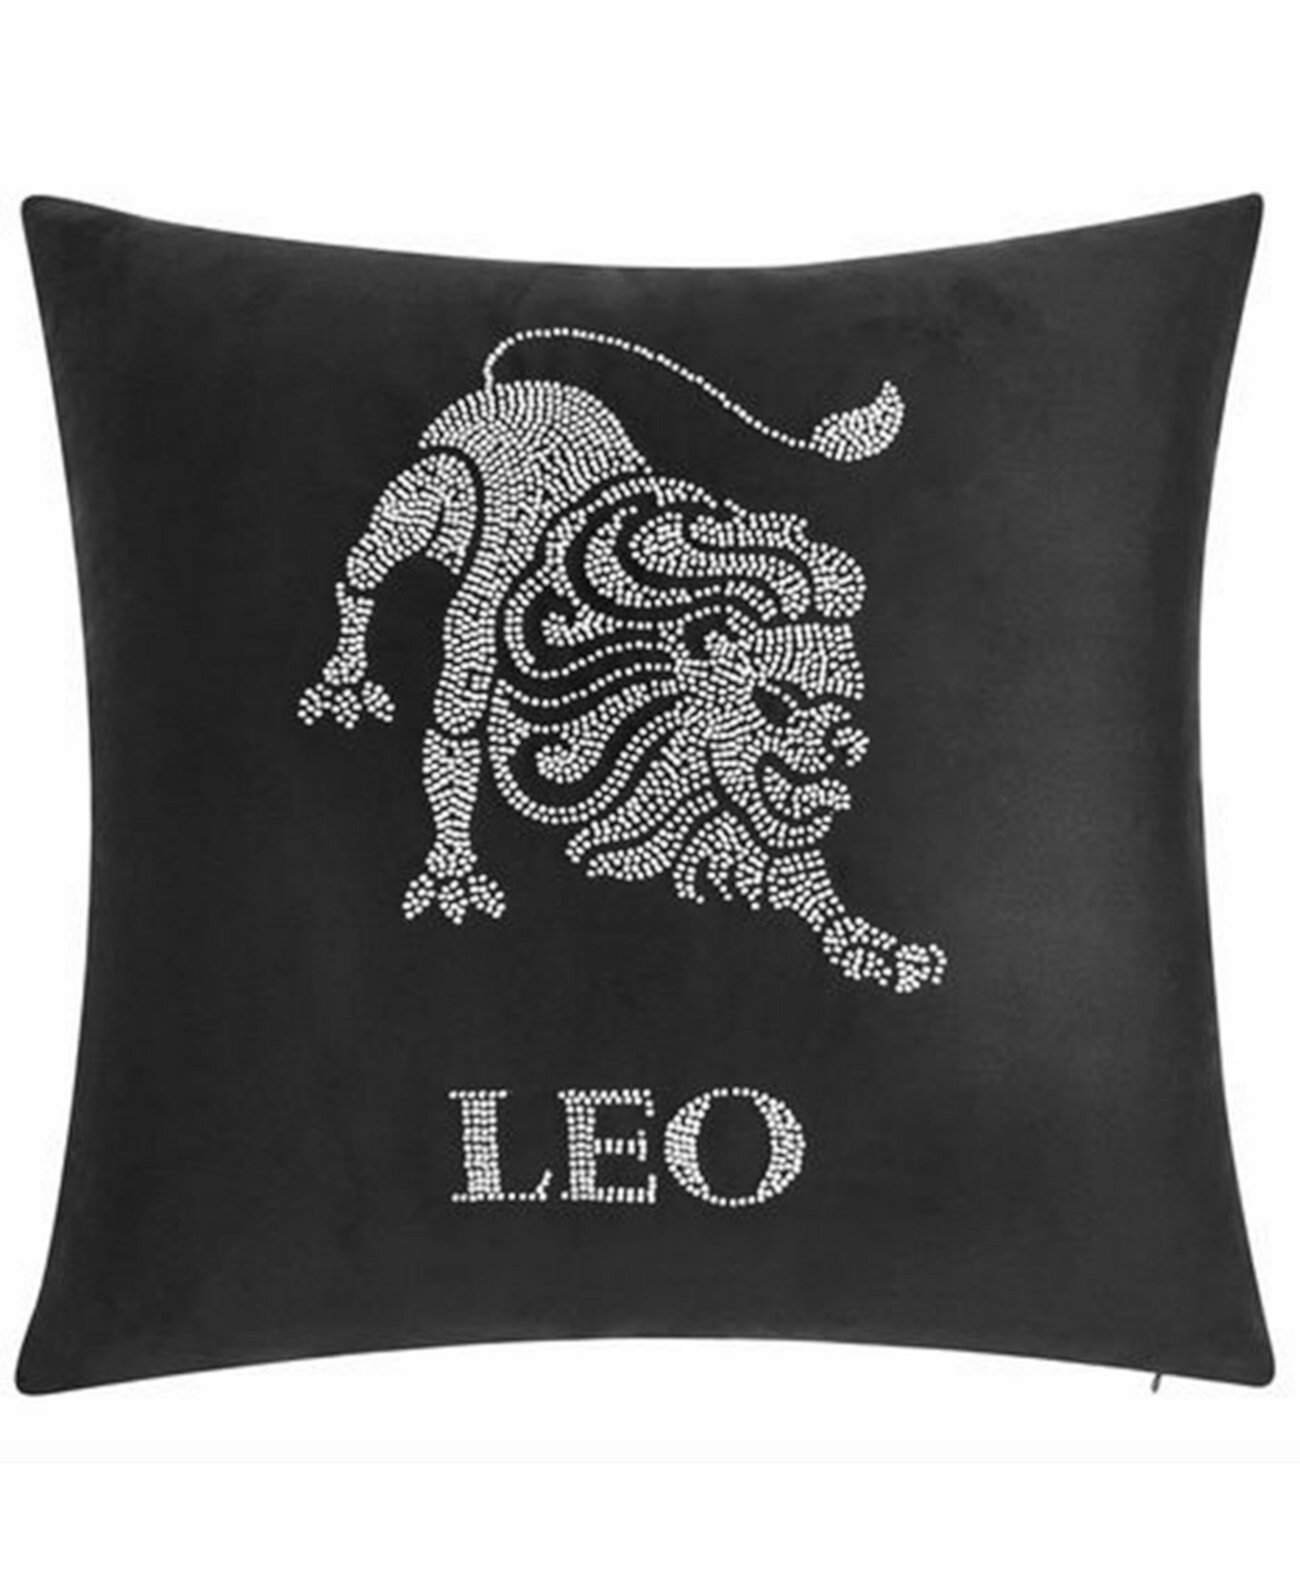 Декоративная подушка «Лео», расшитая бархатом, 18 x 18 дюймов Edie@Home